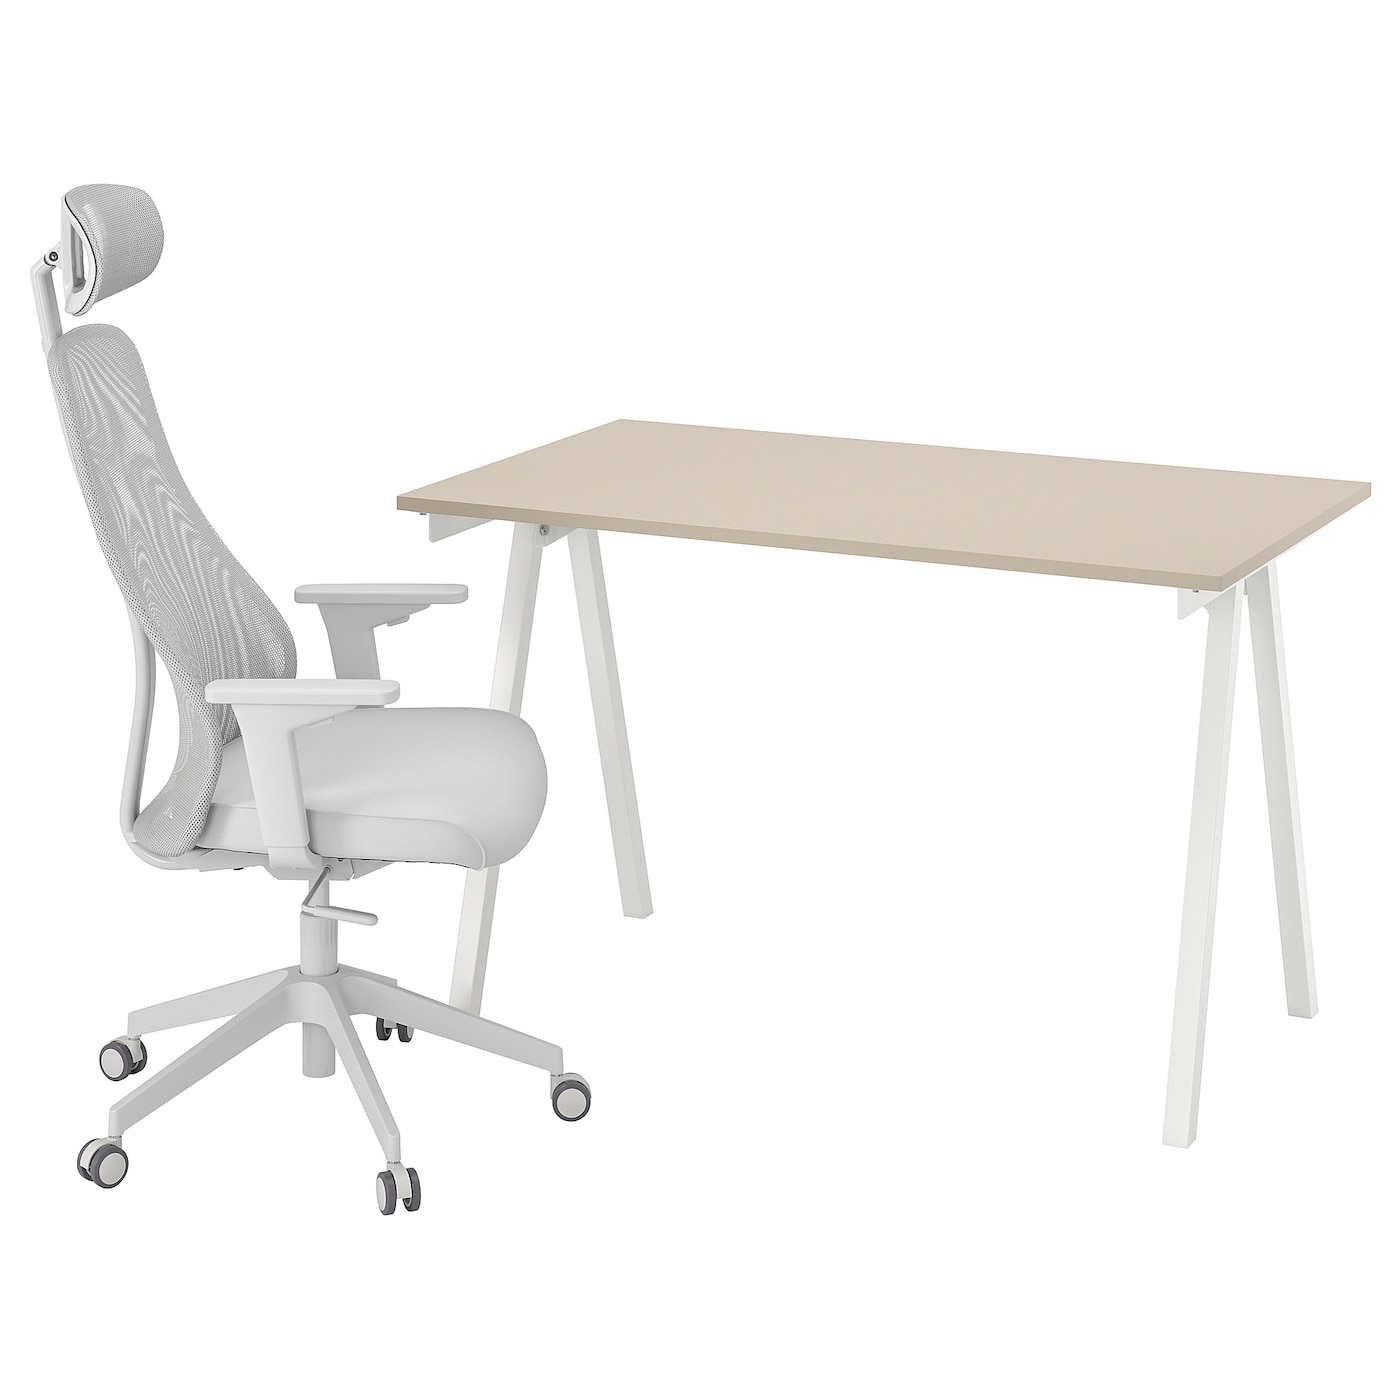 Стол и стул - IKEA TROTTEN / MATCHSPEL, белый/бежевый, ТРОТТЕН/МАТЧСПЕЛ ИКЕА